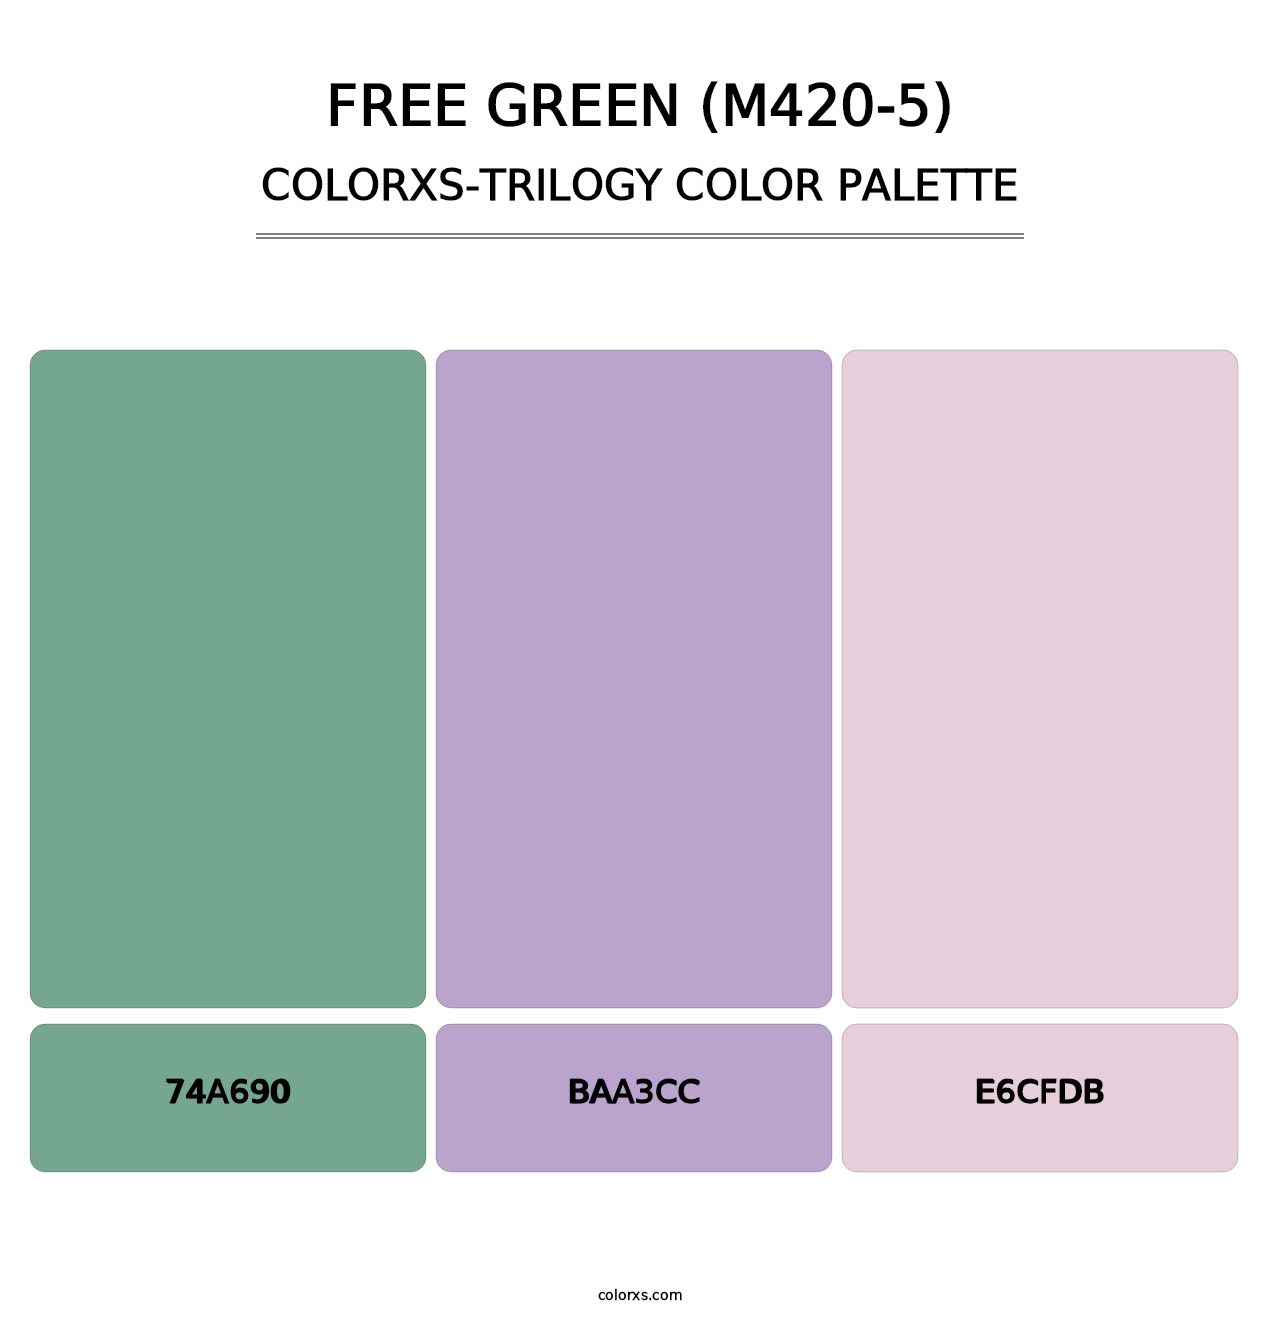 Free Green (M420-5) - Colorxs Trilogy Palette